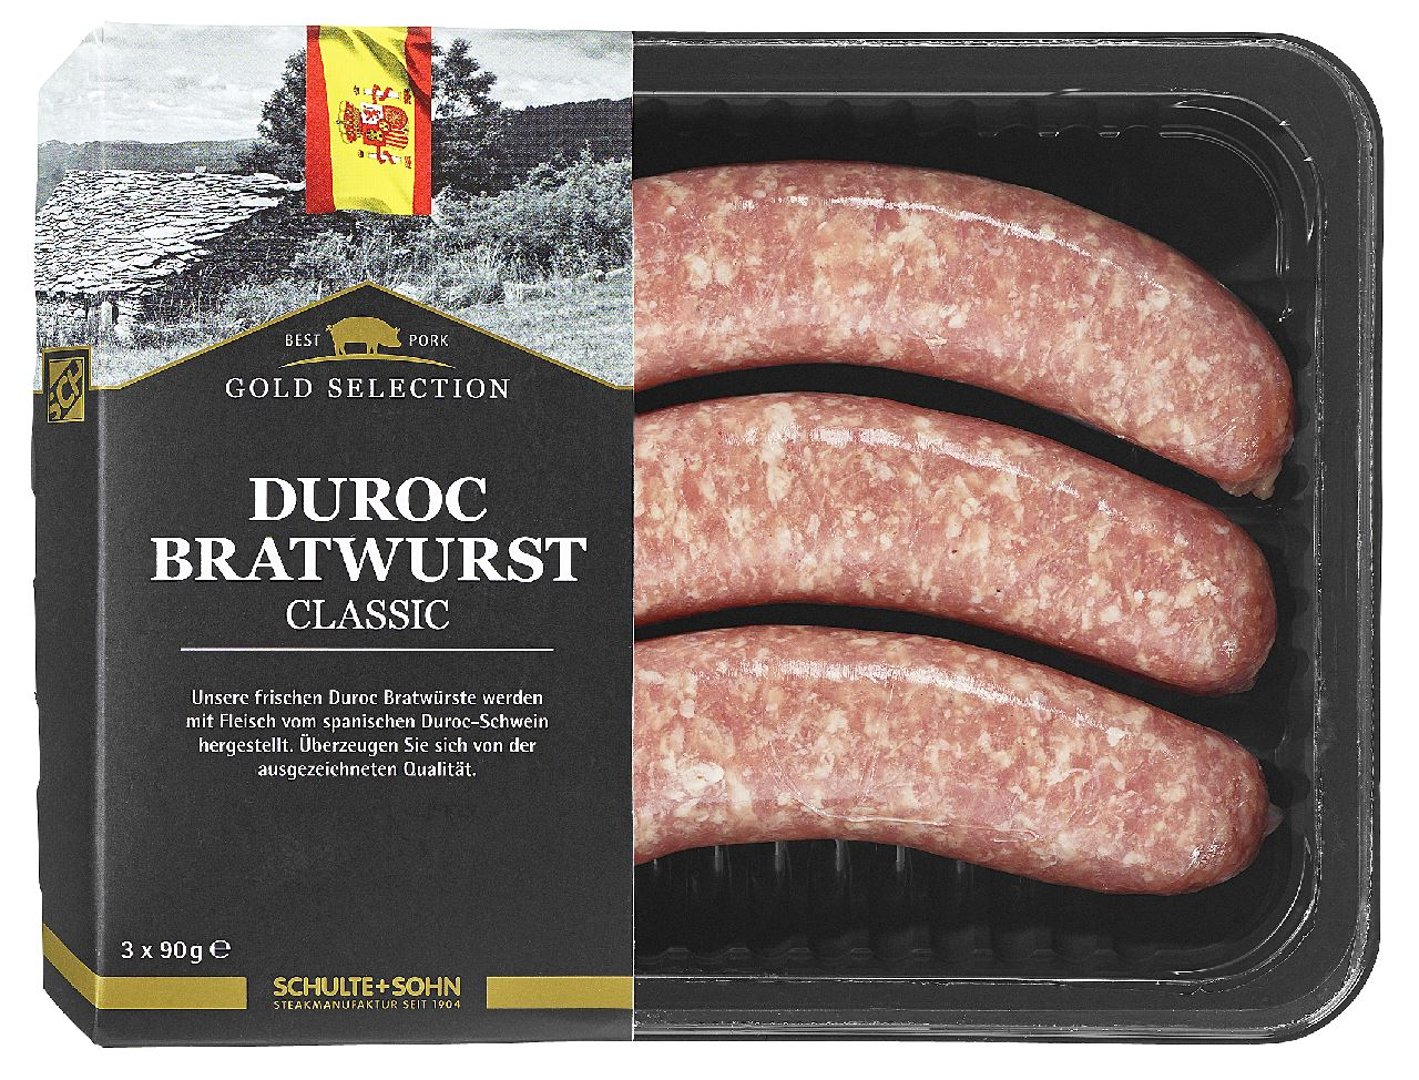 Schulte & Sohn - Bratwurst Duroc mit Durocschweinefleisch - 270 g Packung